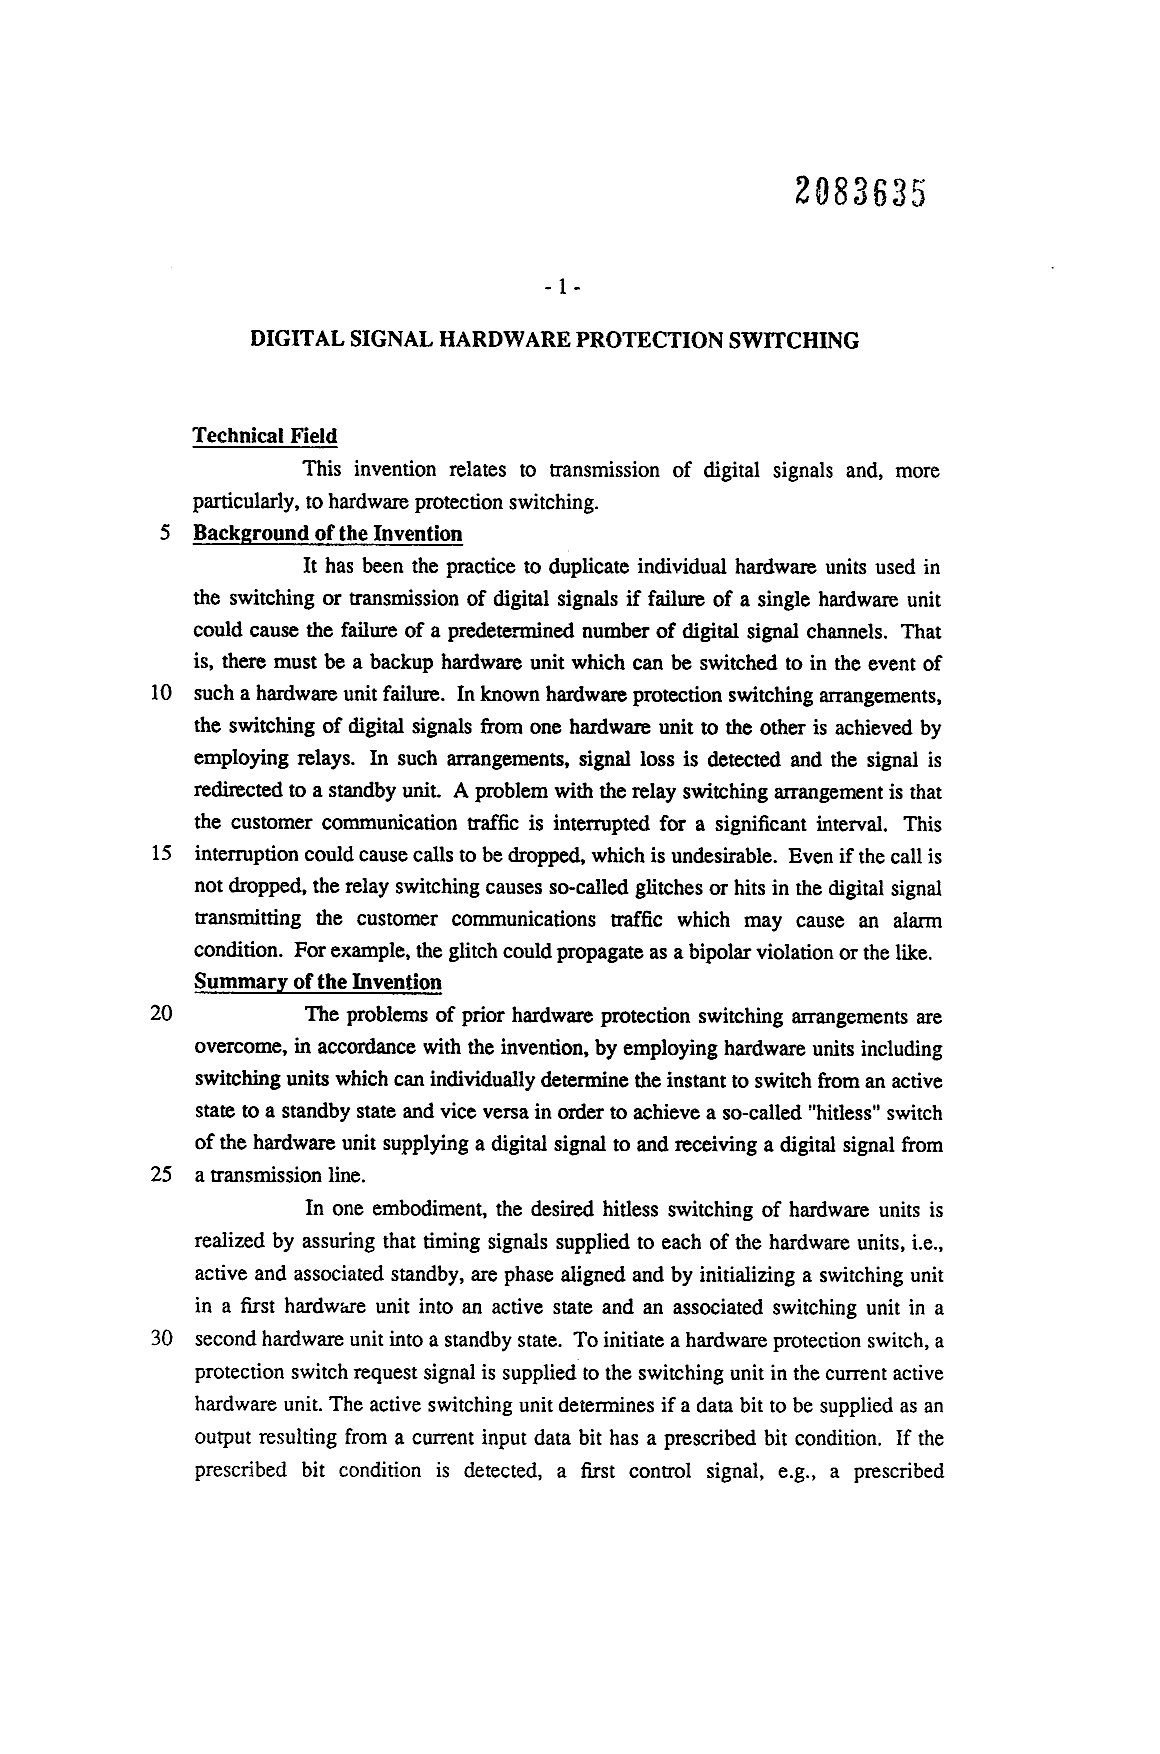 Canadian Patent Document 2083635. Description 19931218. Image 1 of 11